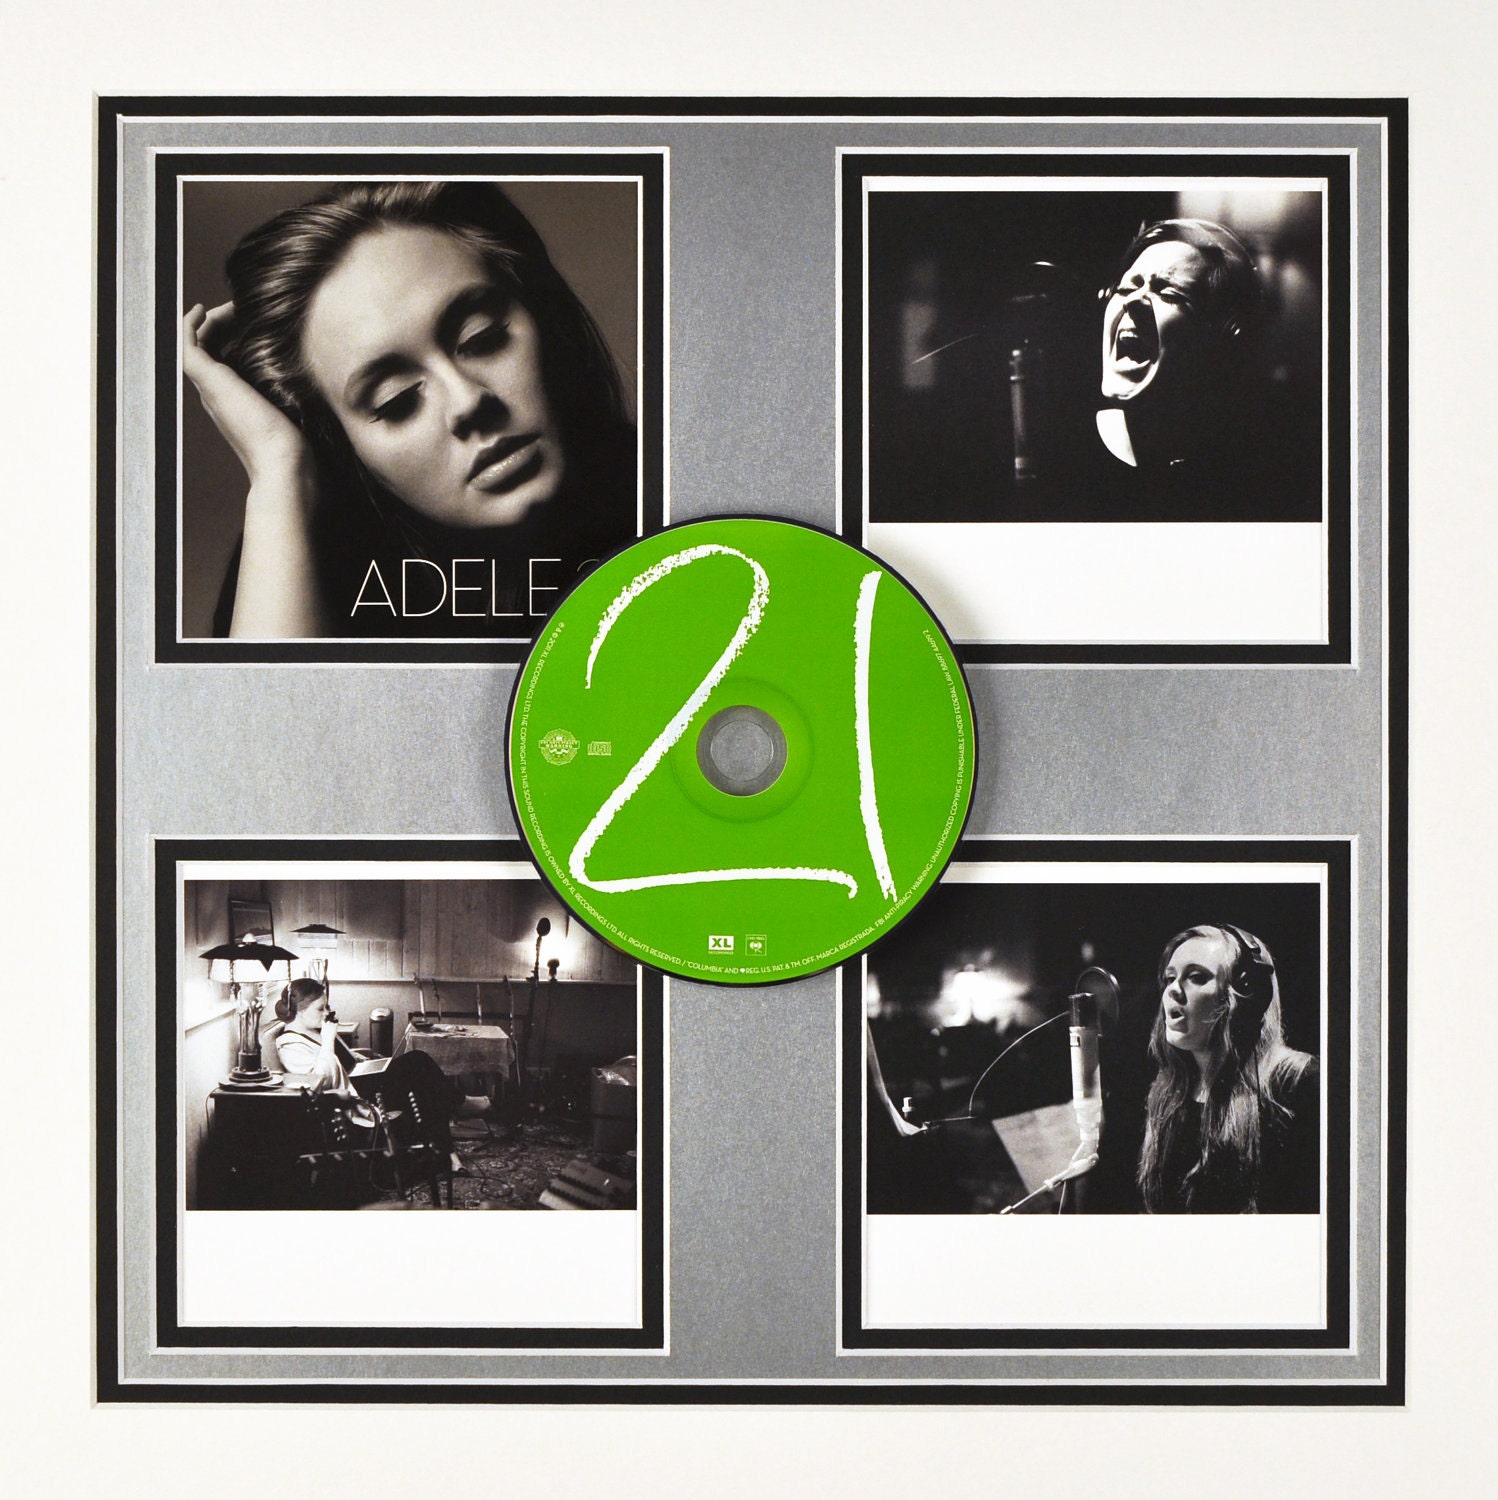 Adele+21+cd+artwork